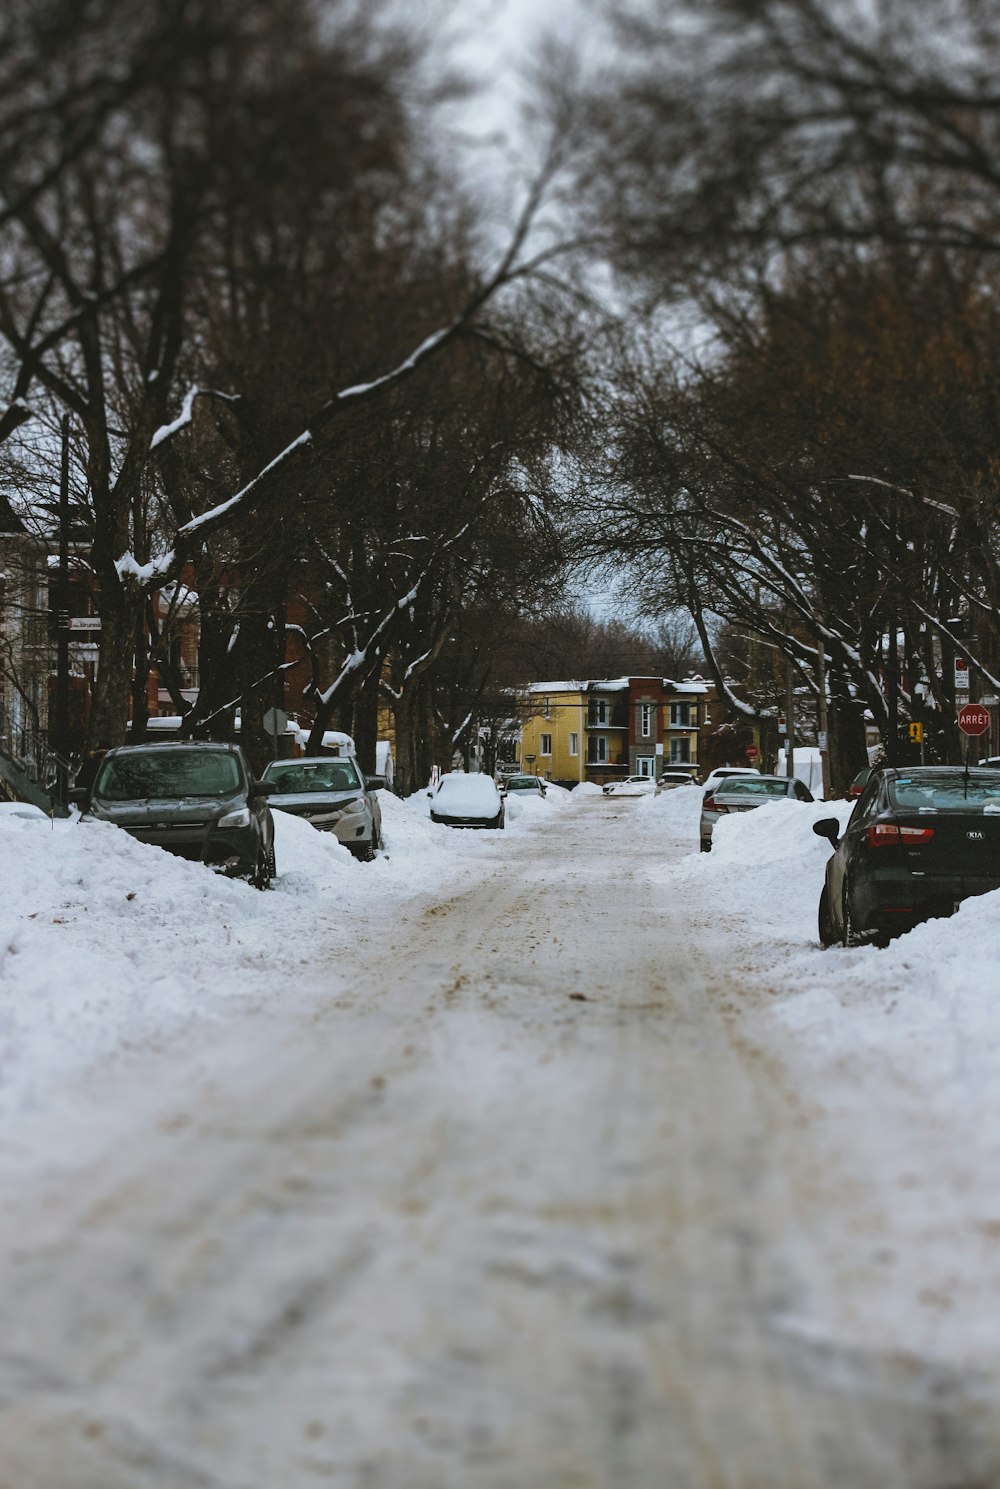 carro preto na estrada coberta de neve durante o dia